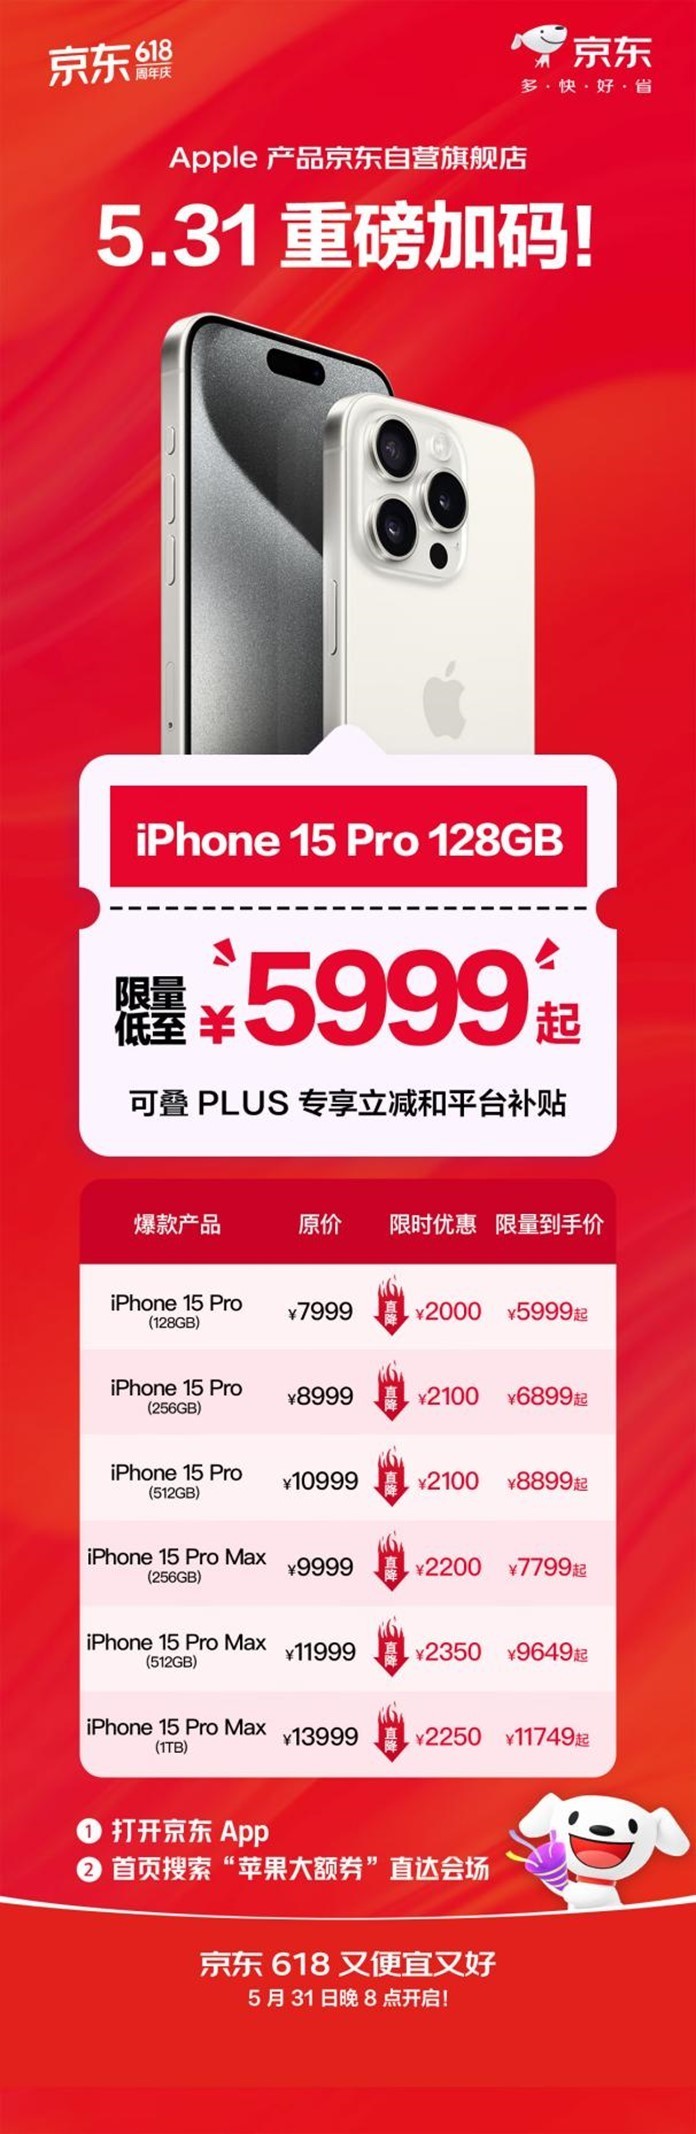 iPhone 15 Pro官方价首次降到6000元以内 媒体评价或已降至全年最低